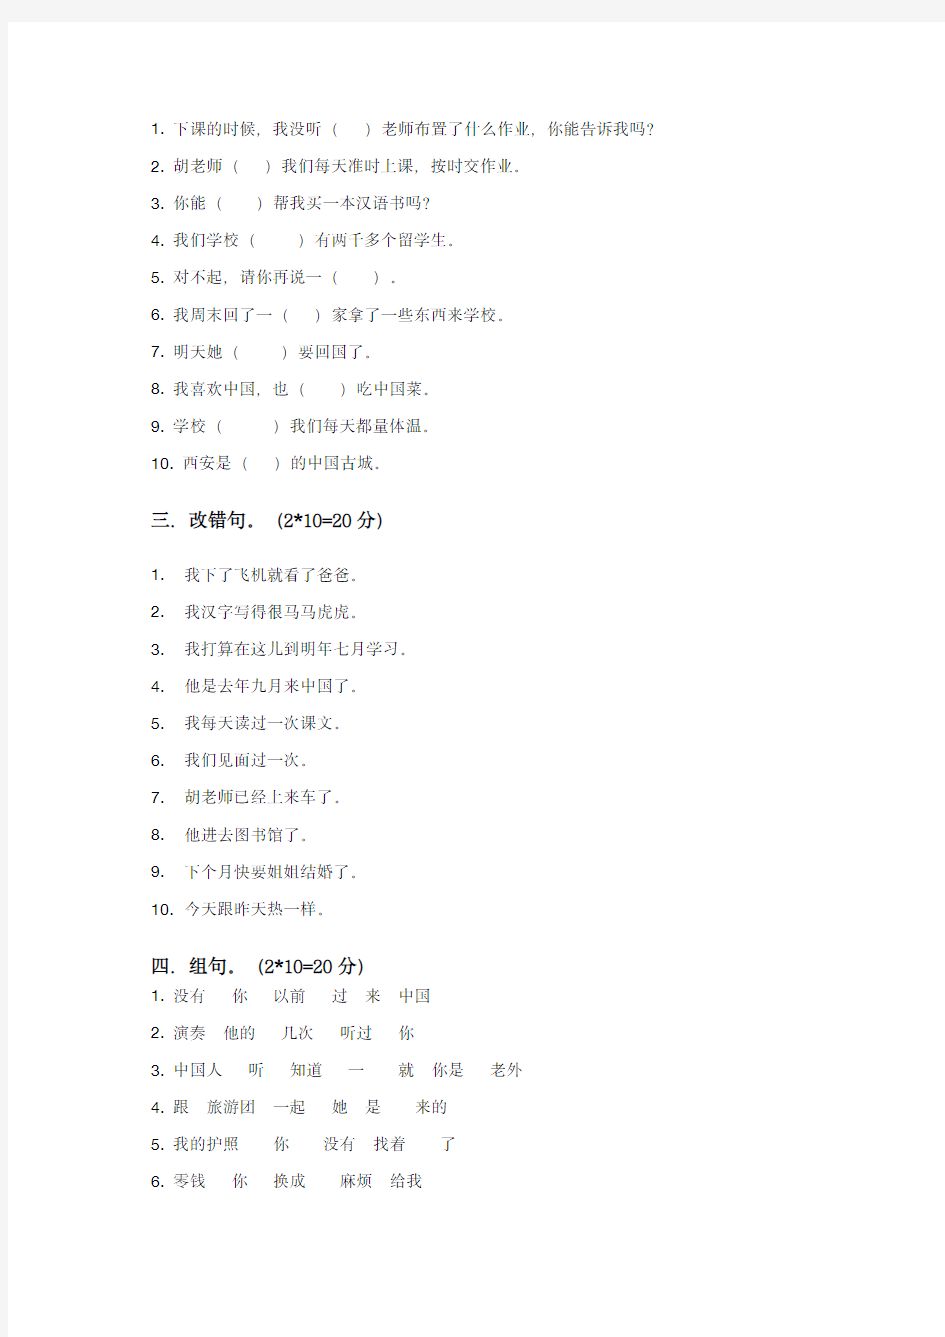 《汉语教程》第二册(上)第7-12课 测试题